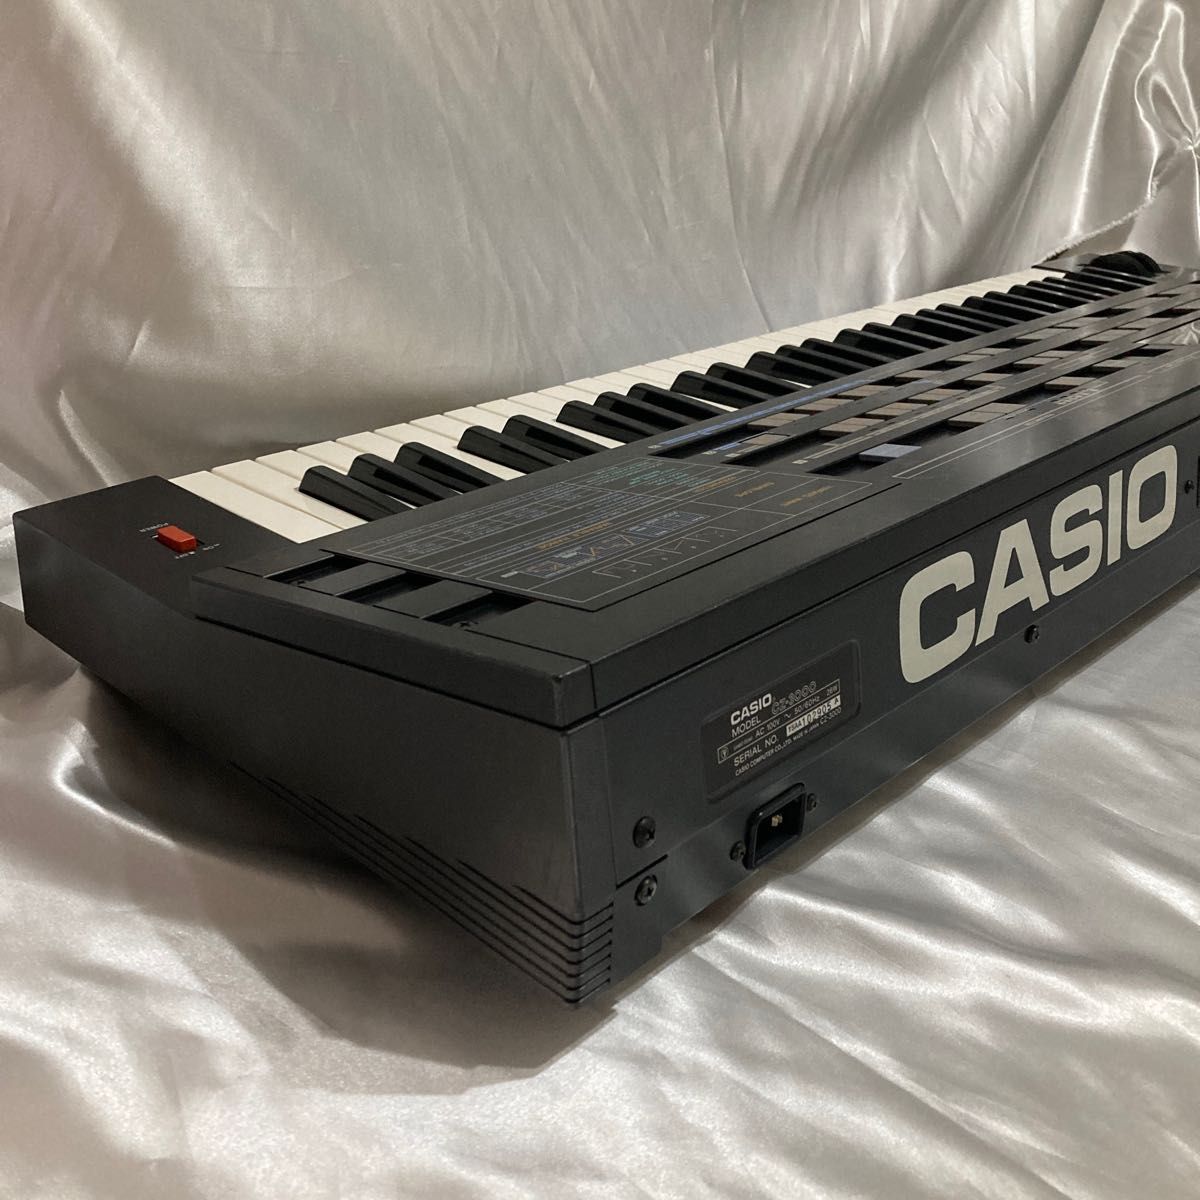 実用 デジタルシンセサイザー カシオ CZ 3000 61鍵 キーボードピアノ-